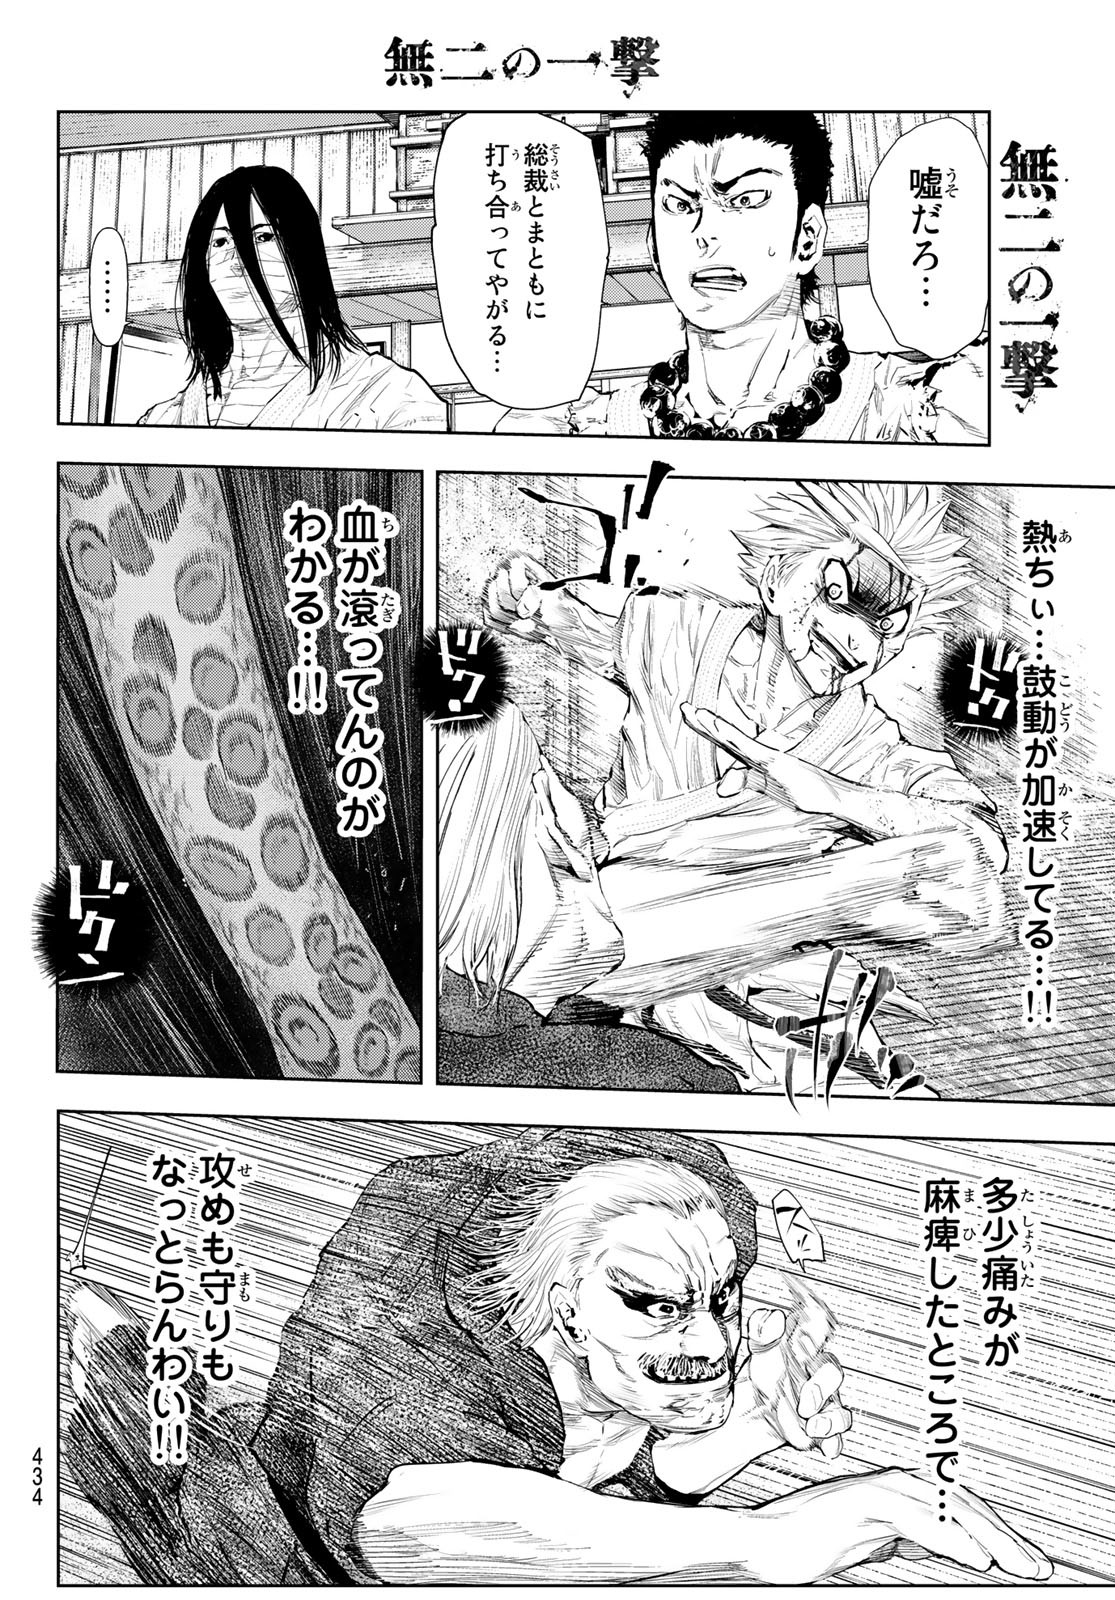 Muni no Ichigeki - Chapter 21 - Page 2